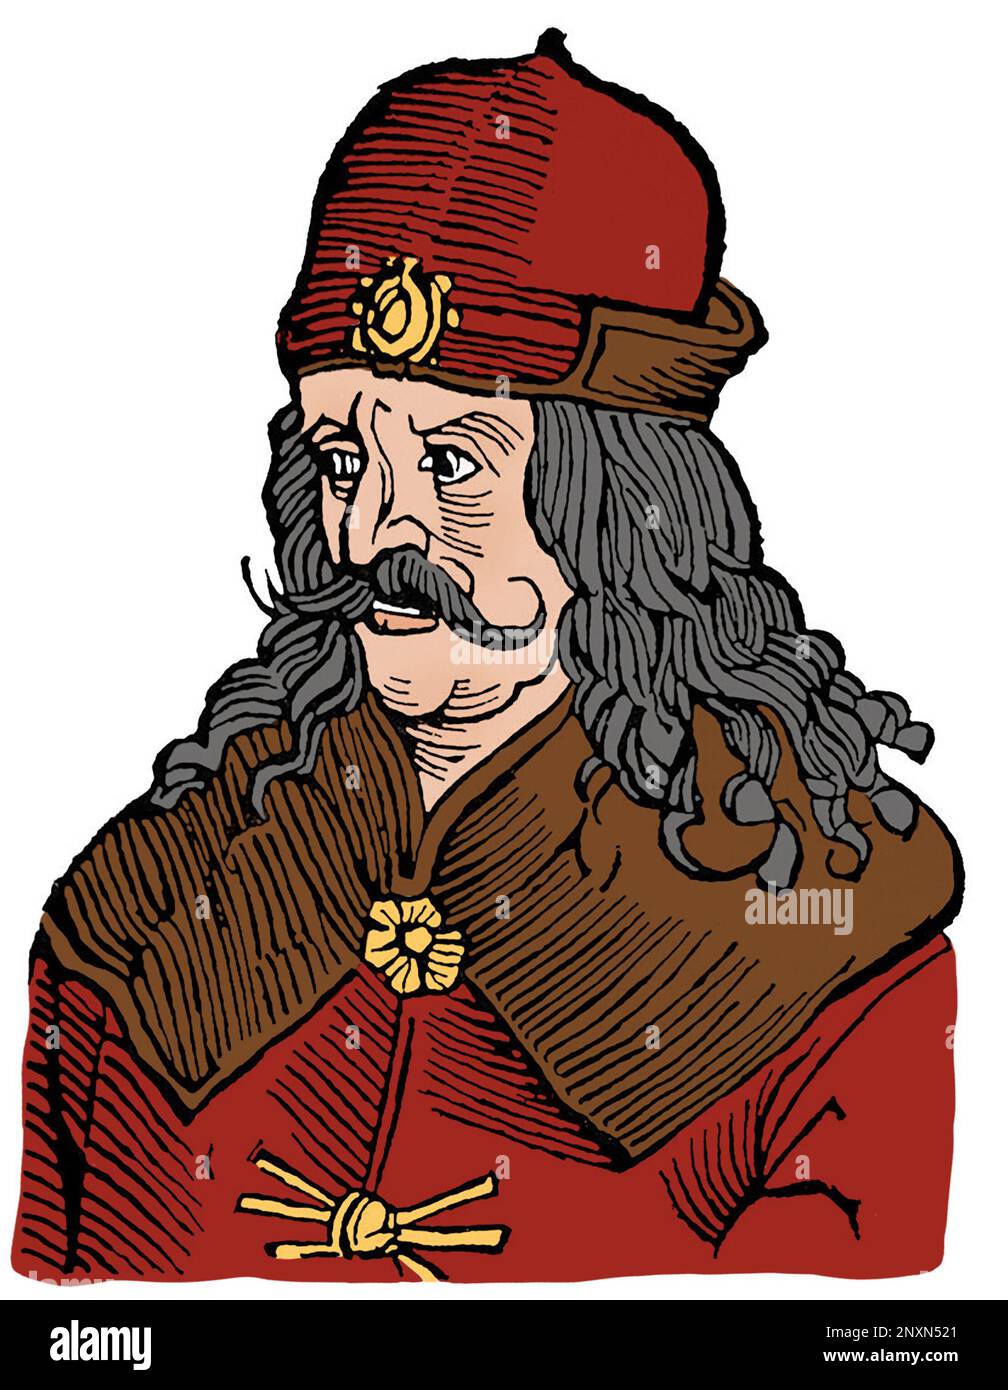 Vlad III, communément connu sous le nom de Vlad l'Impaler ou Vlad Dracula (1428/31, ai 1476/77), était Voïvode de Valachie trois fois. Il est souvent considéré comme l'un des dirigeants les plus importants de l'histoire du Valašsko et comme un héros national de la Roumanie. Célèbre pour sa cruauté, son patronyme a inspiré le nom du vampire littéraire de Bram Stoker, le comte Dracula. Illustration après une gravure du 16th siècle. Colorisé. Banque D'Images